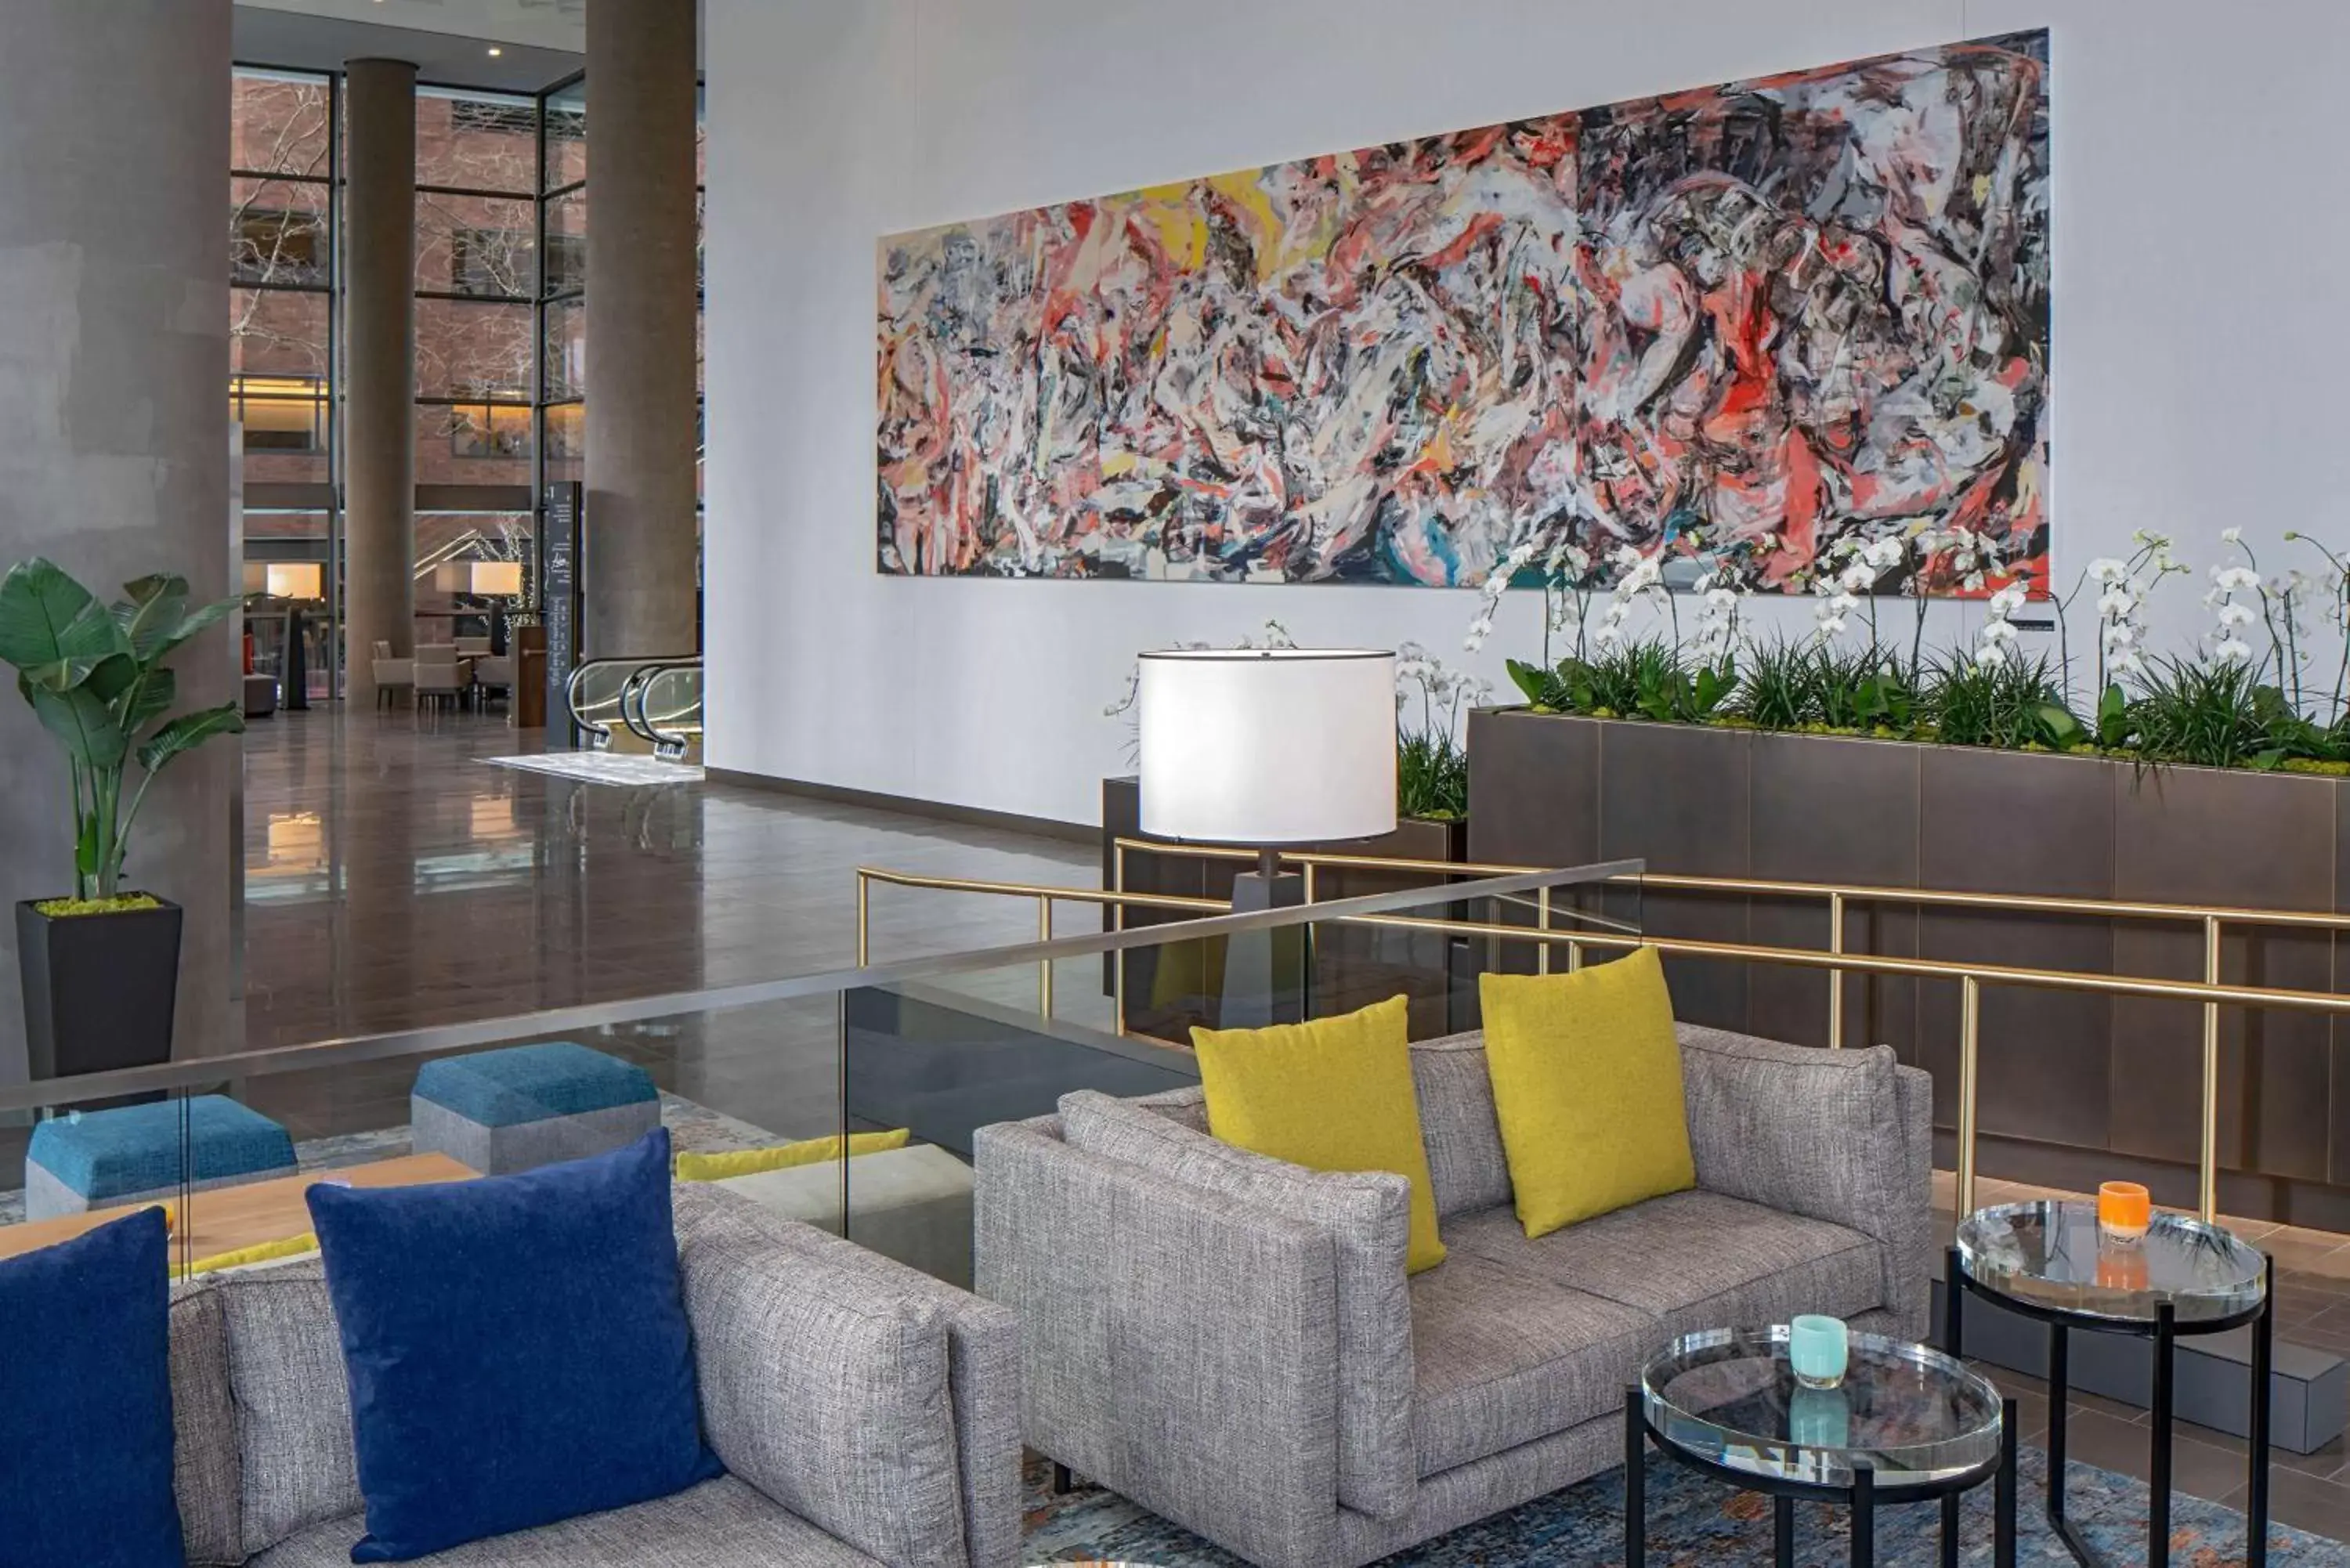 Lobby or reception in Hyatt Regency Seattle